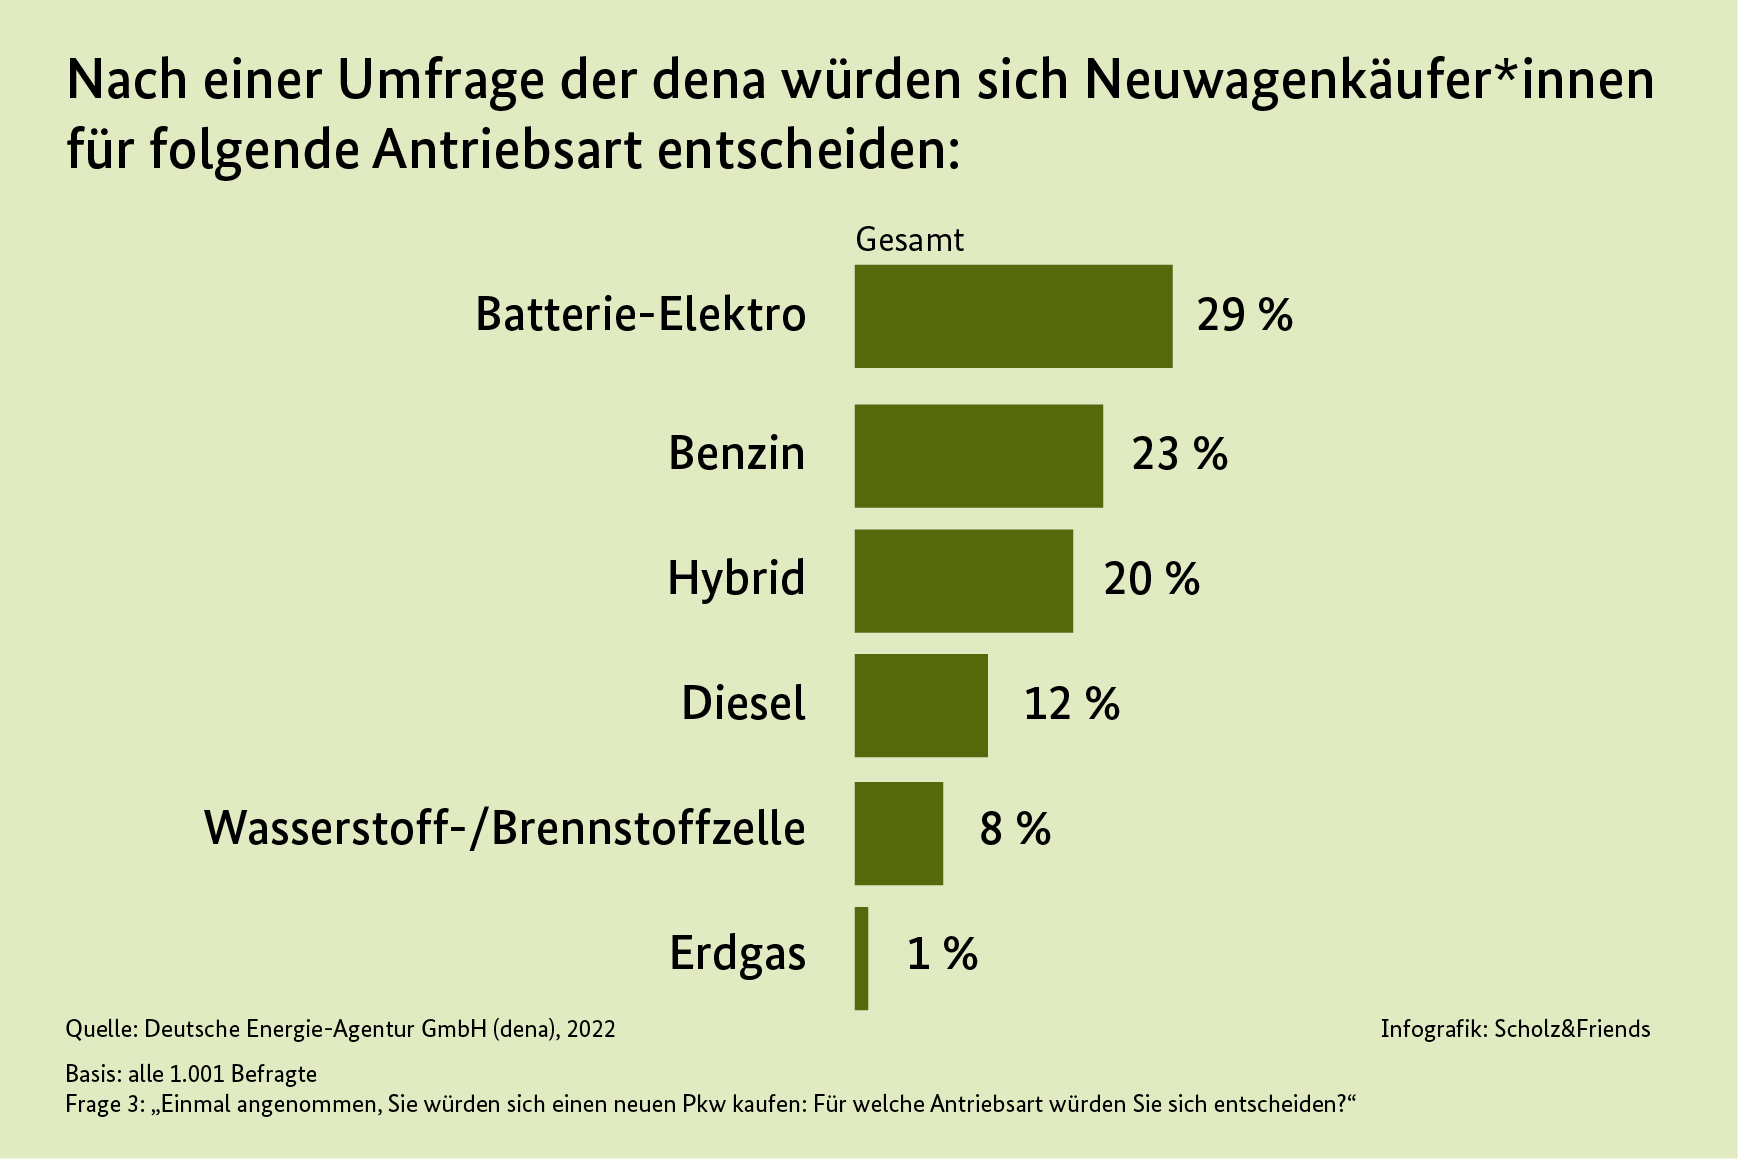 Infografik Umfrage der dena zum Neuwagenkauf nach Antriebsart